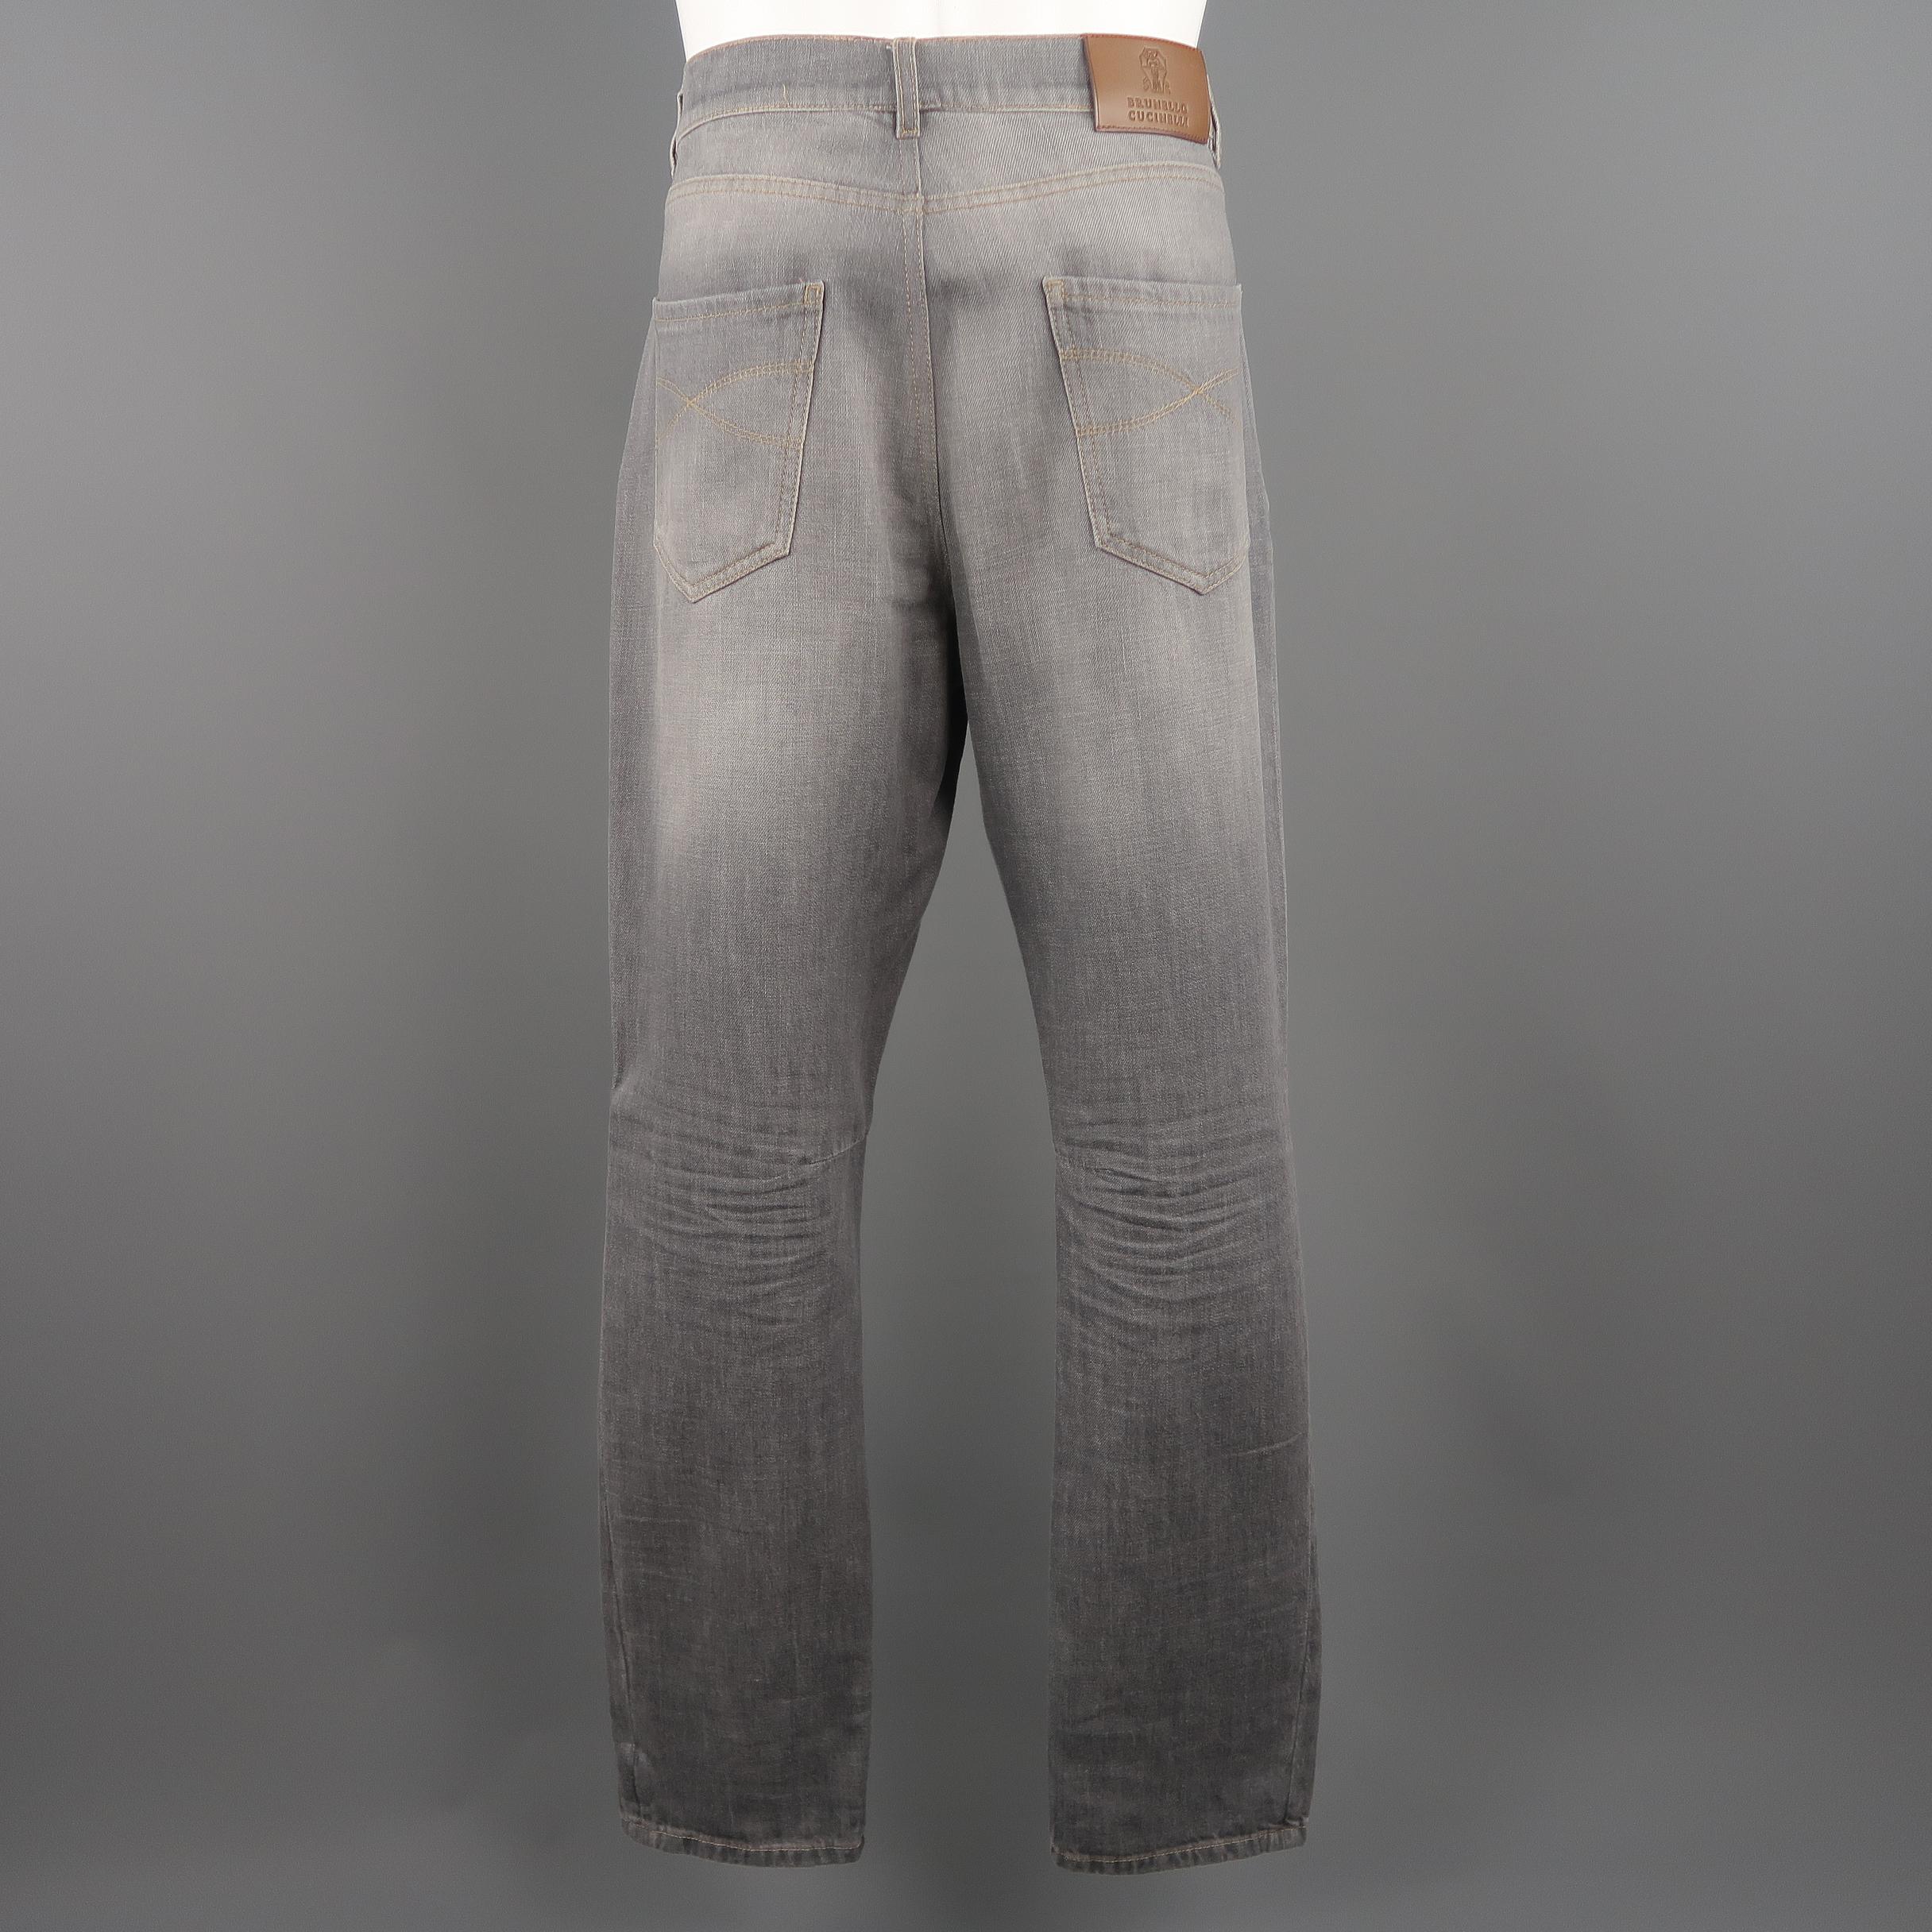 Men's BRUNELLO CUCINELLI Size 34 Grey Wash Denim Jeans 1